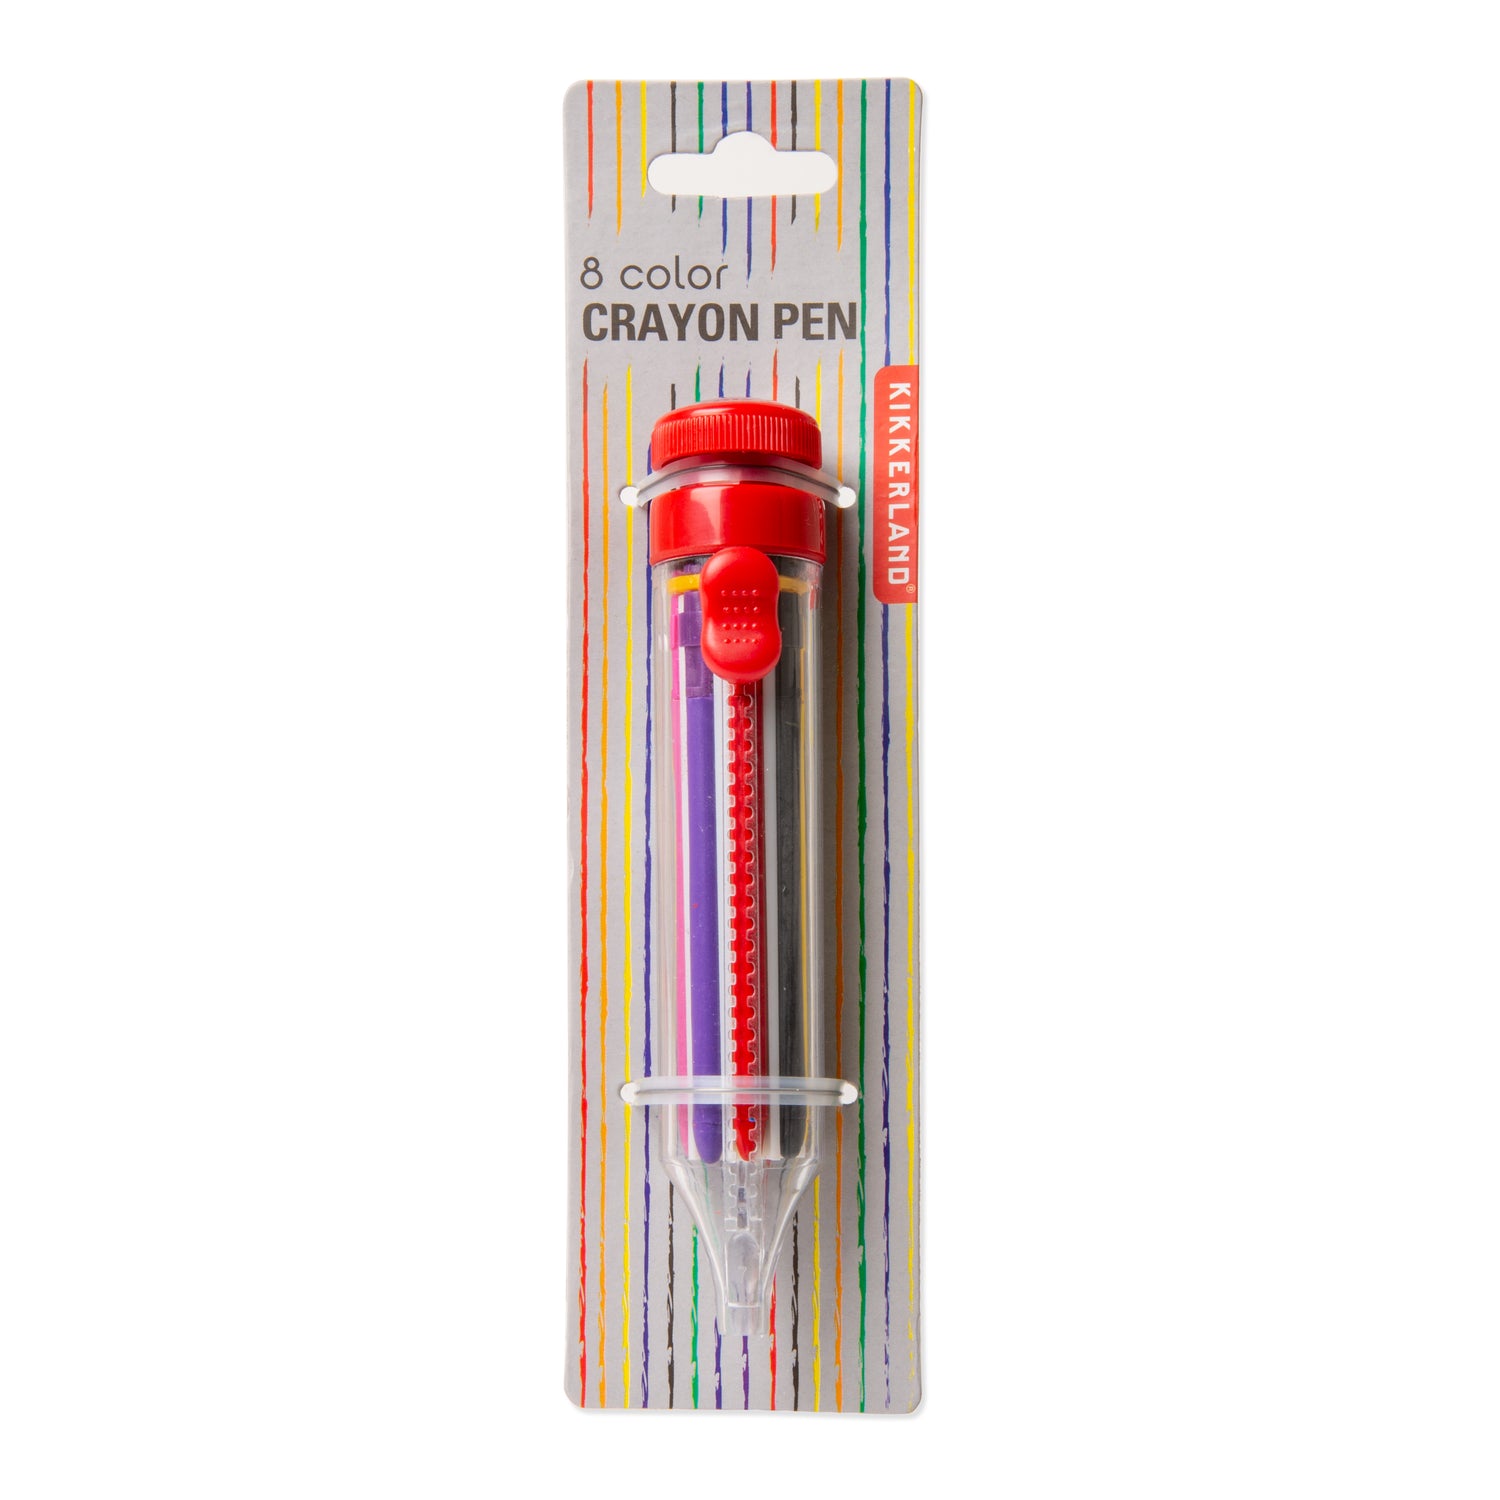 8 Color Crayon Pen